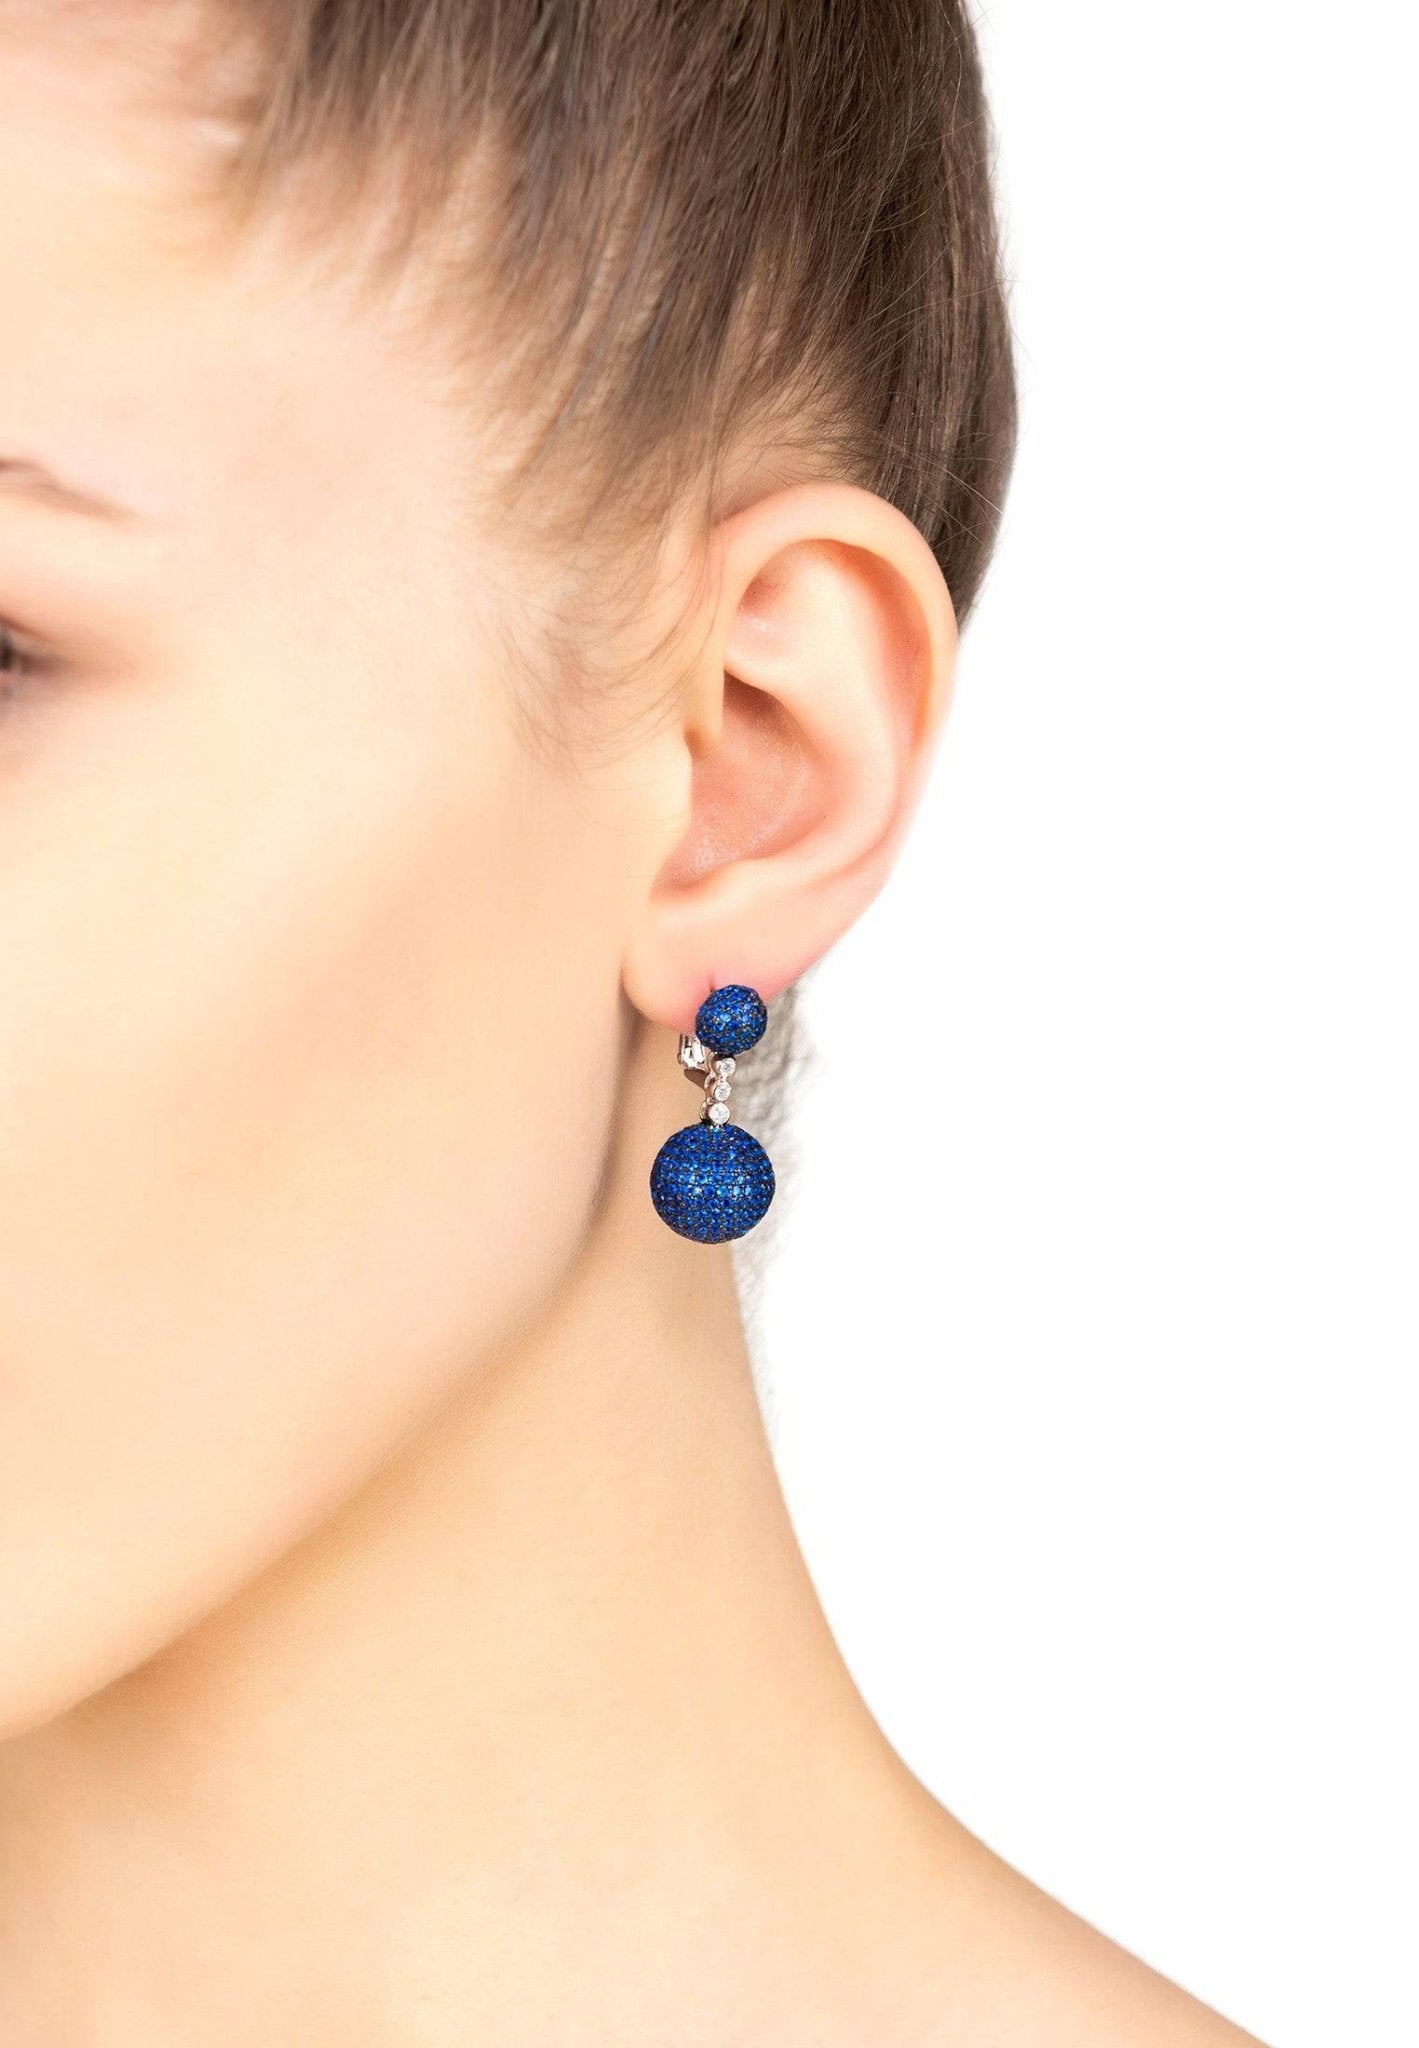 Monaco Sphere Drop Earrings Silver Sapphire Blue Cz - LATELITA Earrings